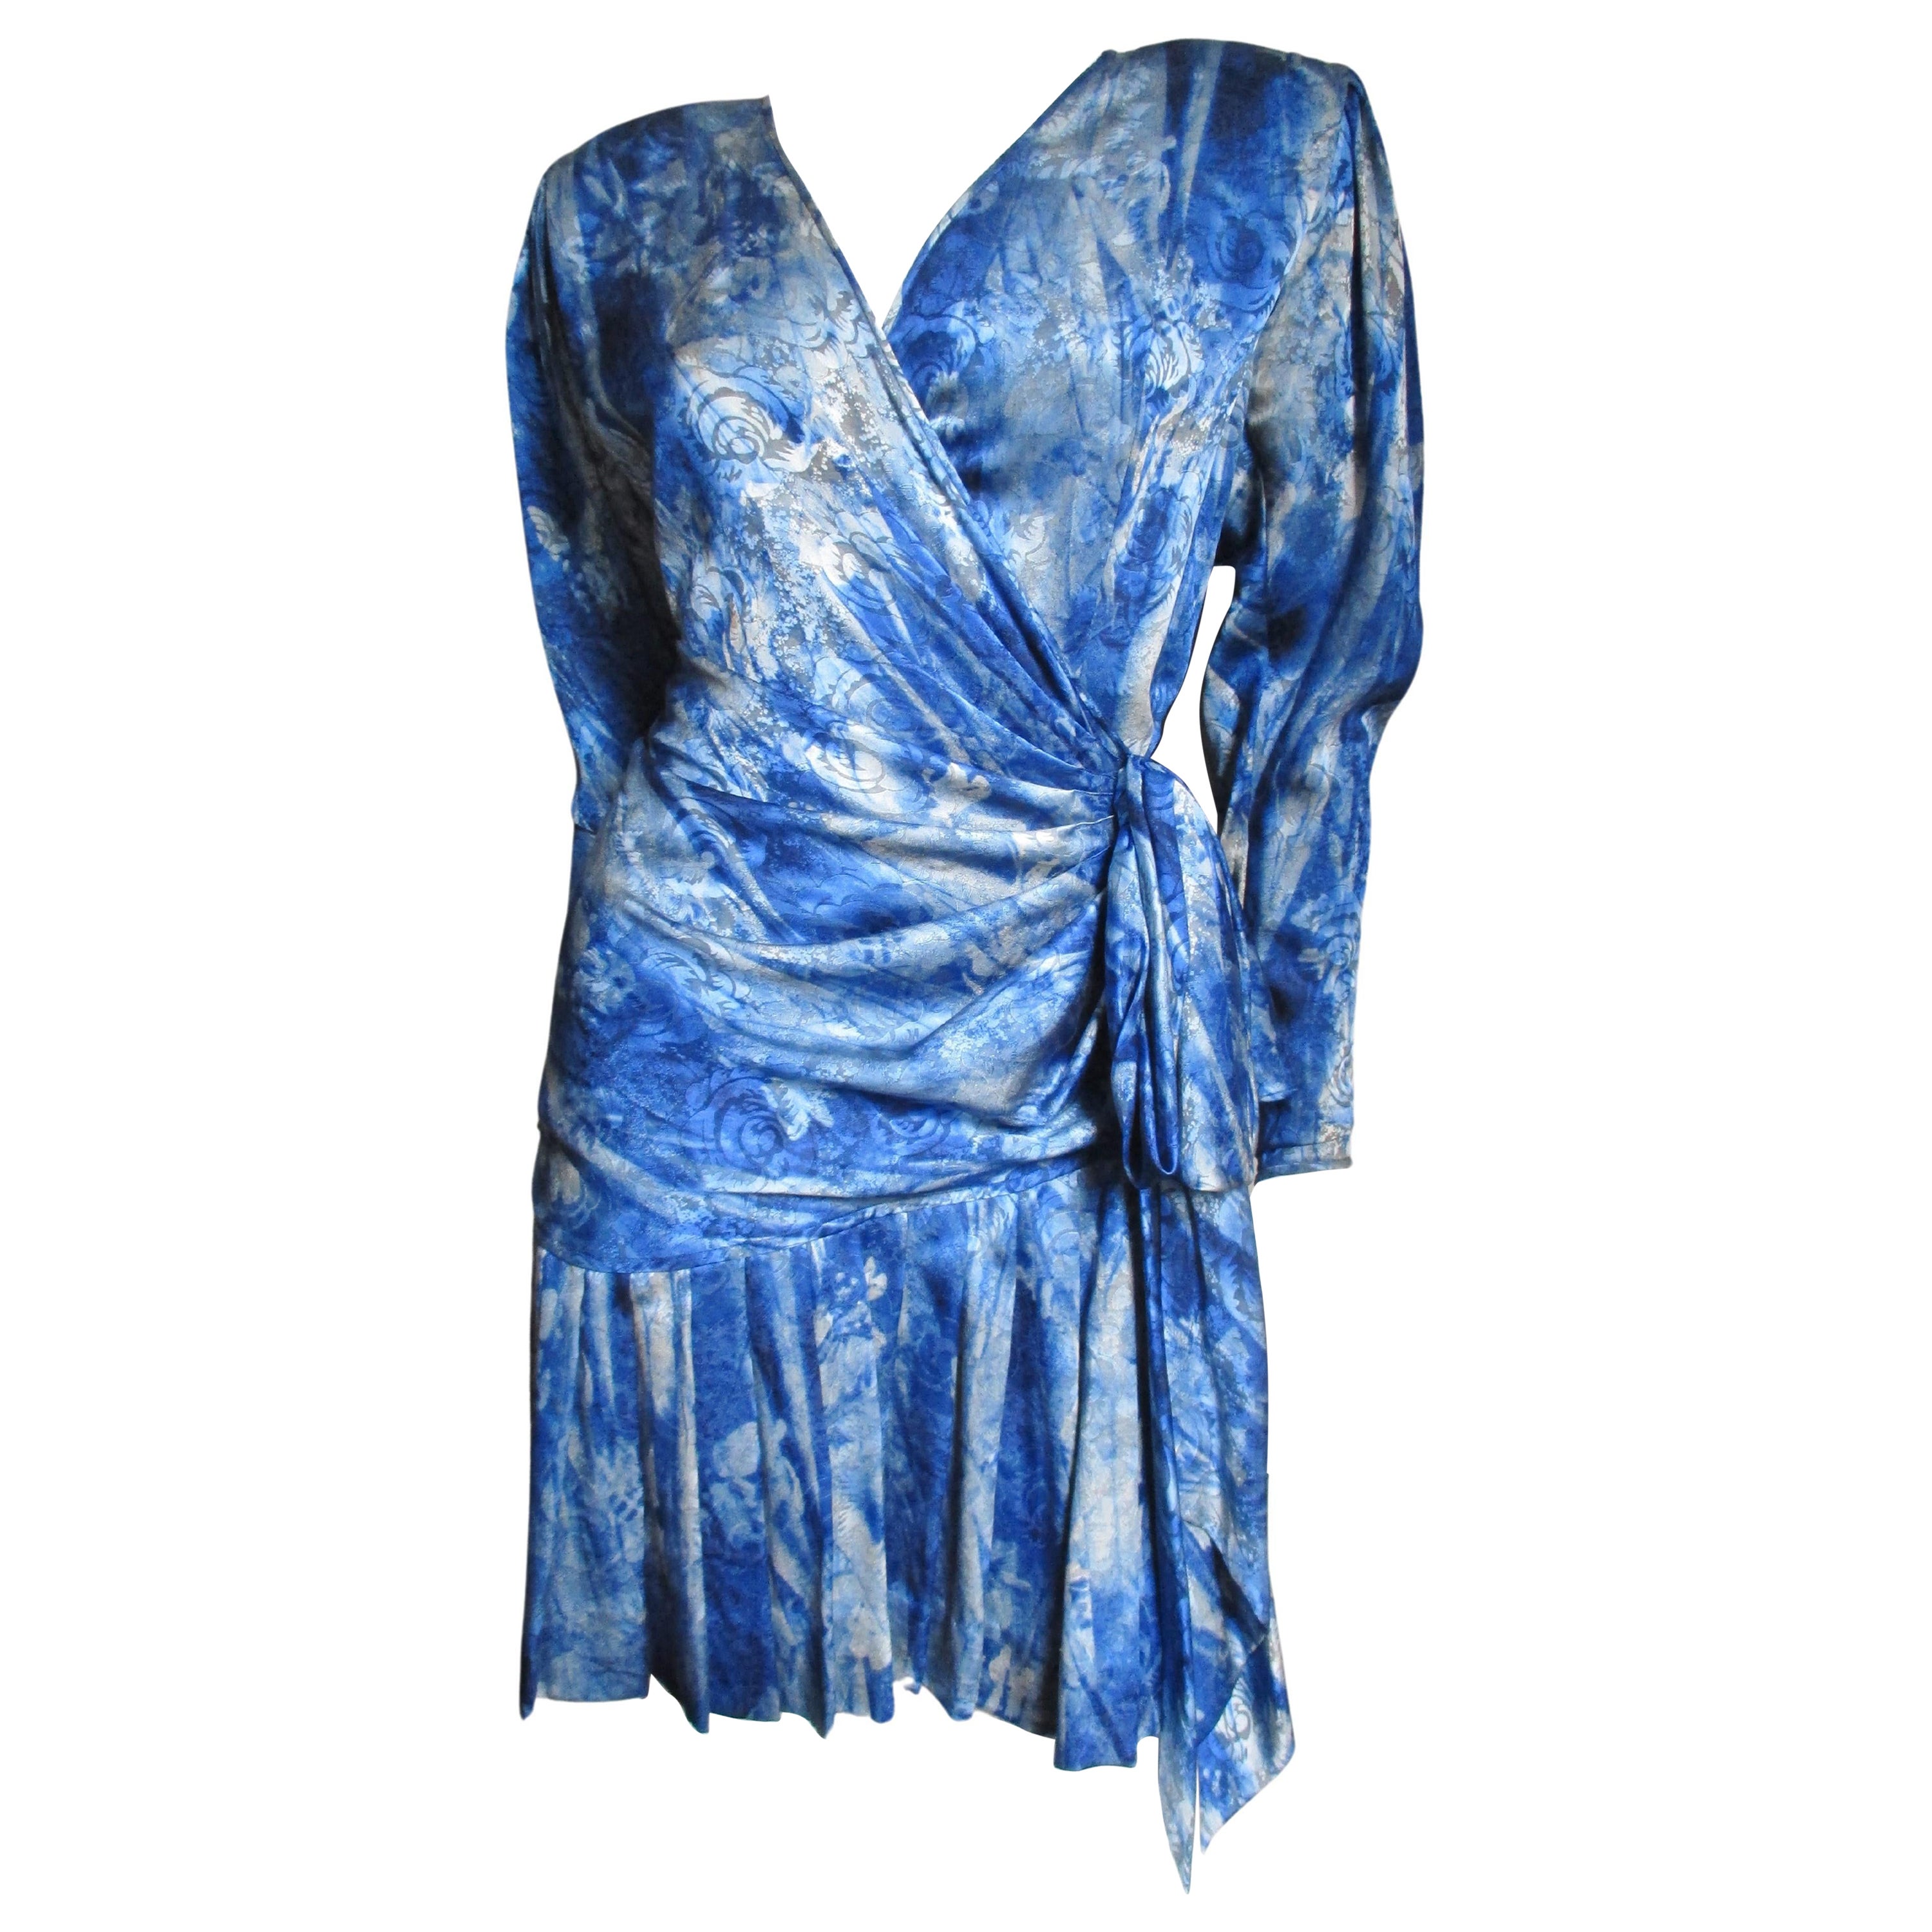 CHANEL Fall 2012 Runway 12A Metallic Strapless Dress Blue